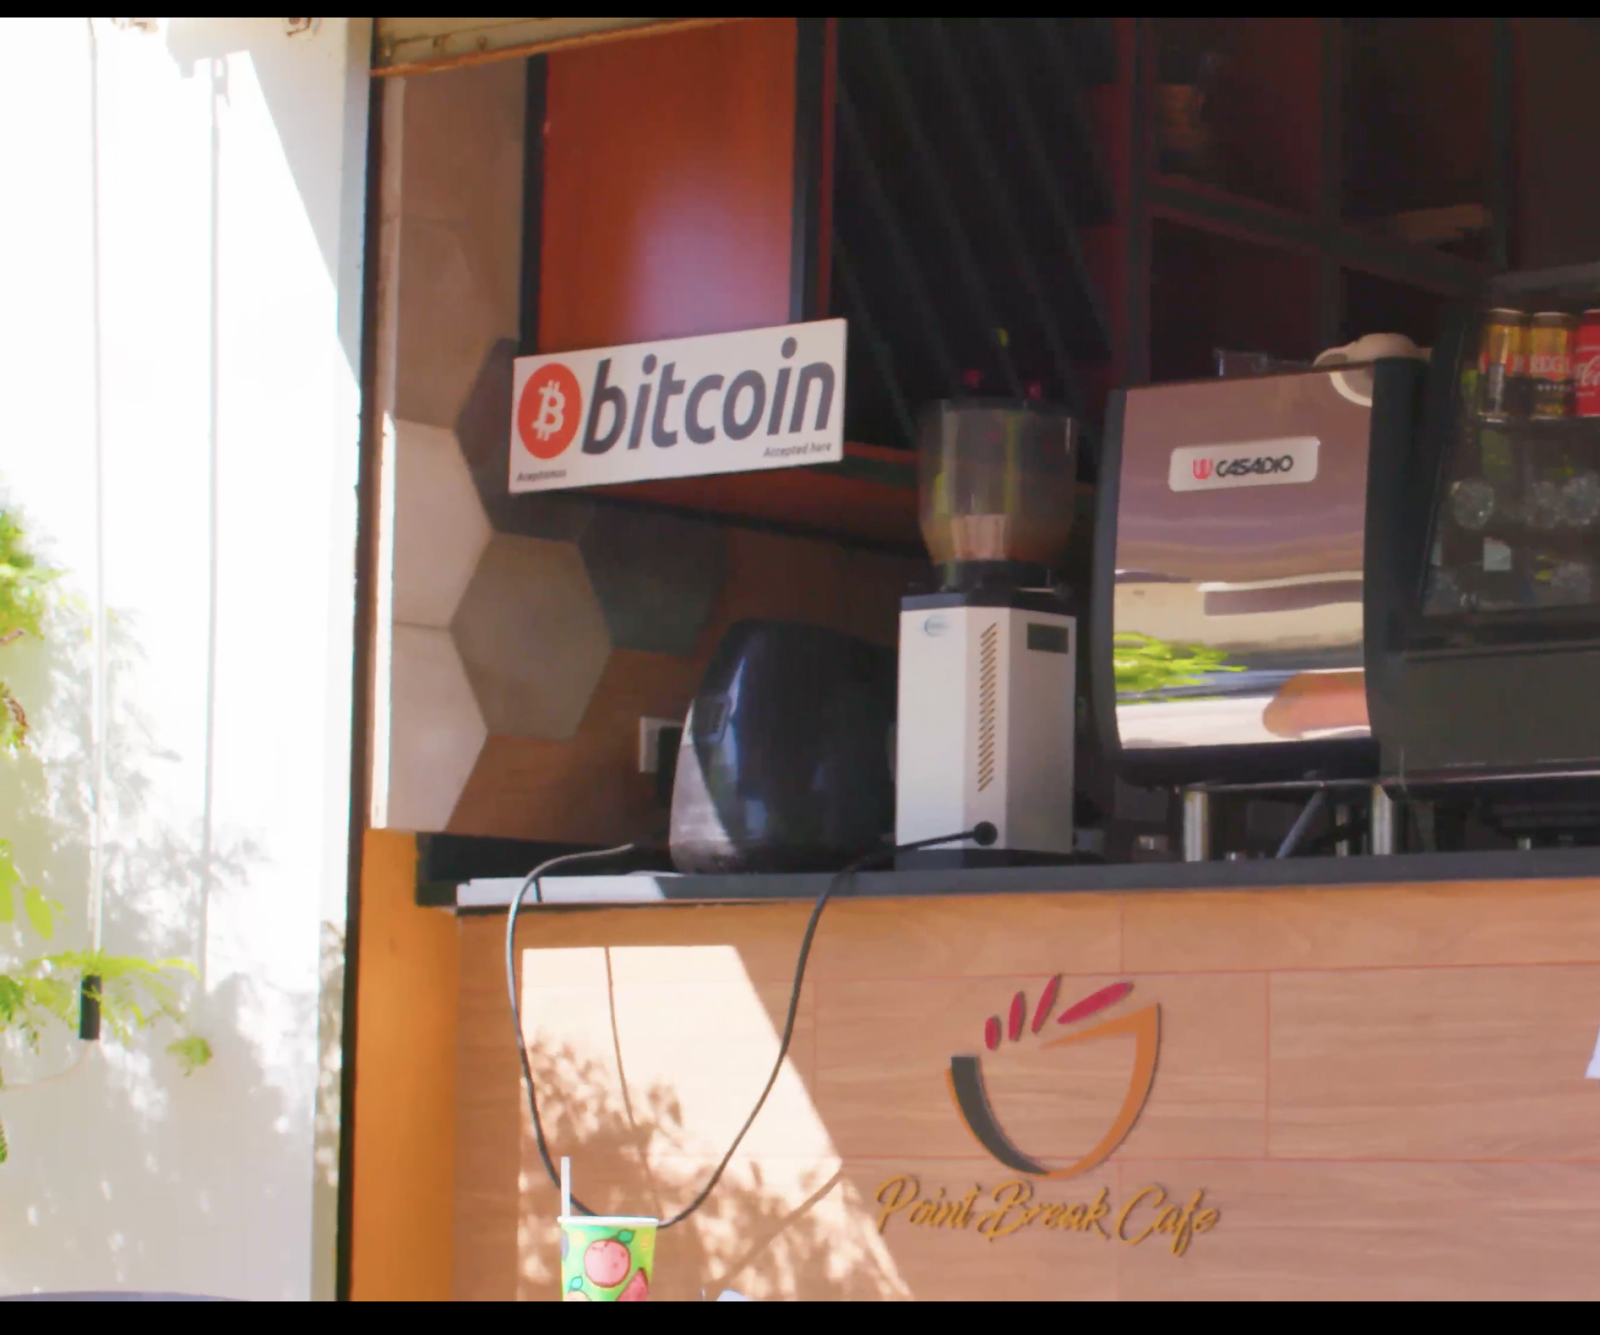 Bitcoin payment, El Salvador Bitcoin